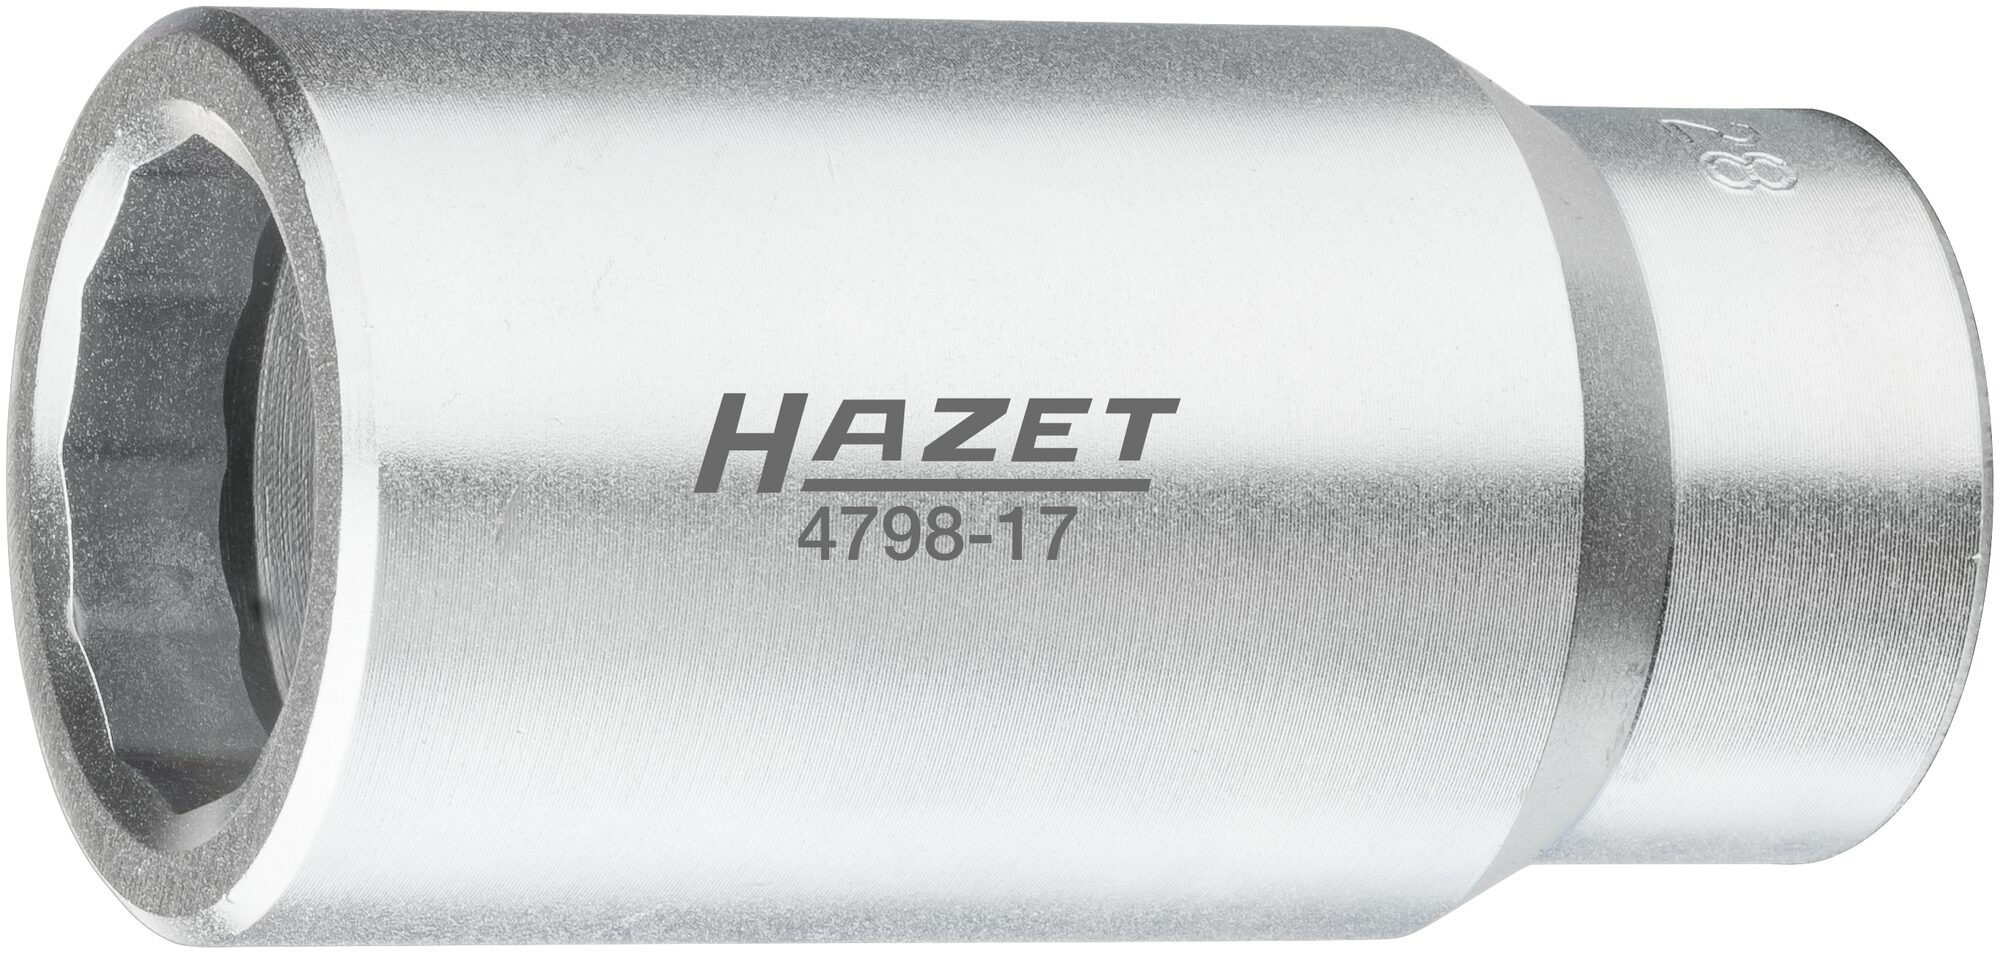 HAZET Injektor Steckschlüsseleinsatz Bosch s 28 mm 4798-17 ∙ Vierkant12,5 mm (1/2 Zoll) ∙ 28 mm